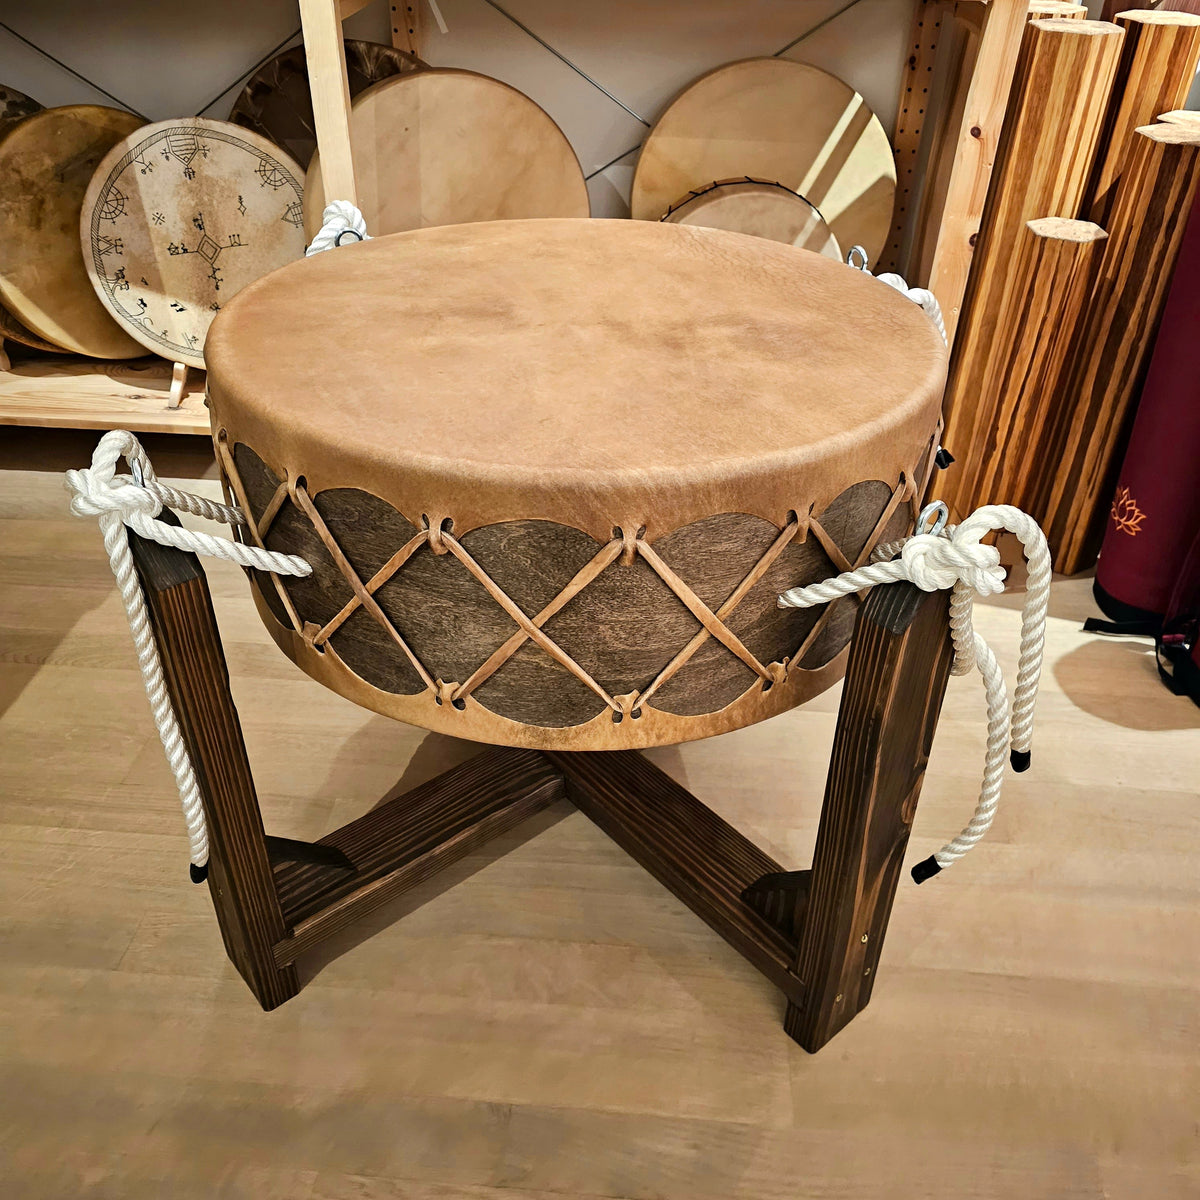 Powwow Trommel 60 cm - 24 cm mit Ständer - Bison| Schamanentrommel | Perkussion &amp; Trommel | Dunum.ch